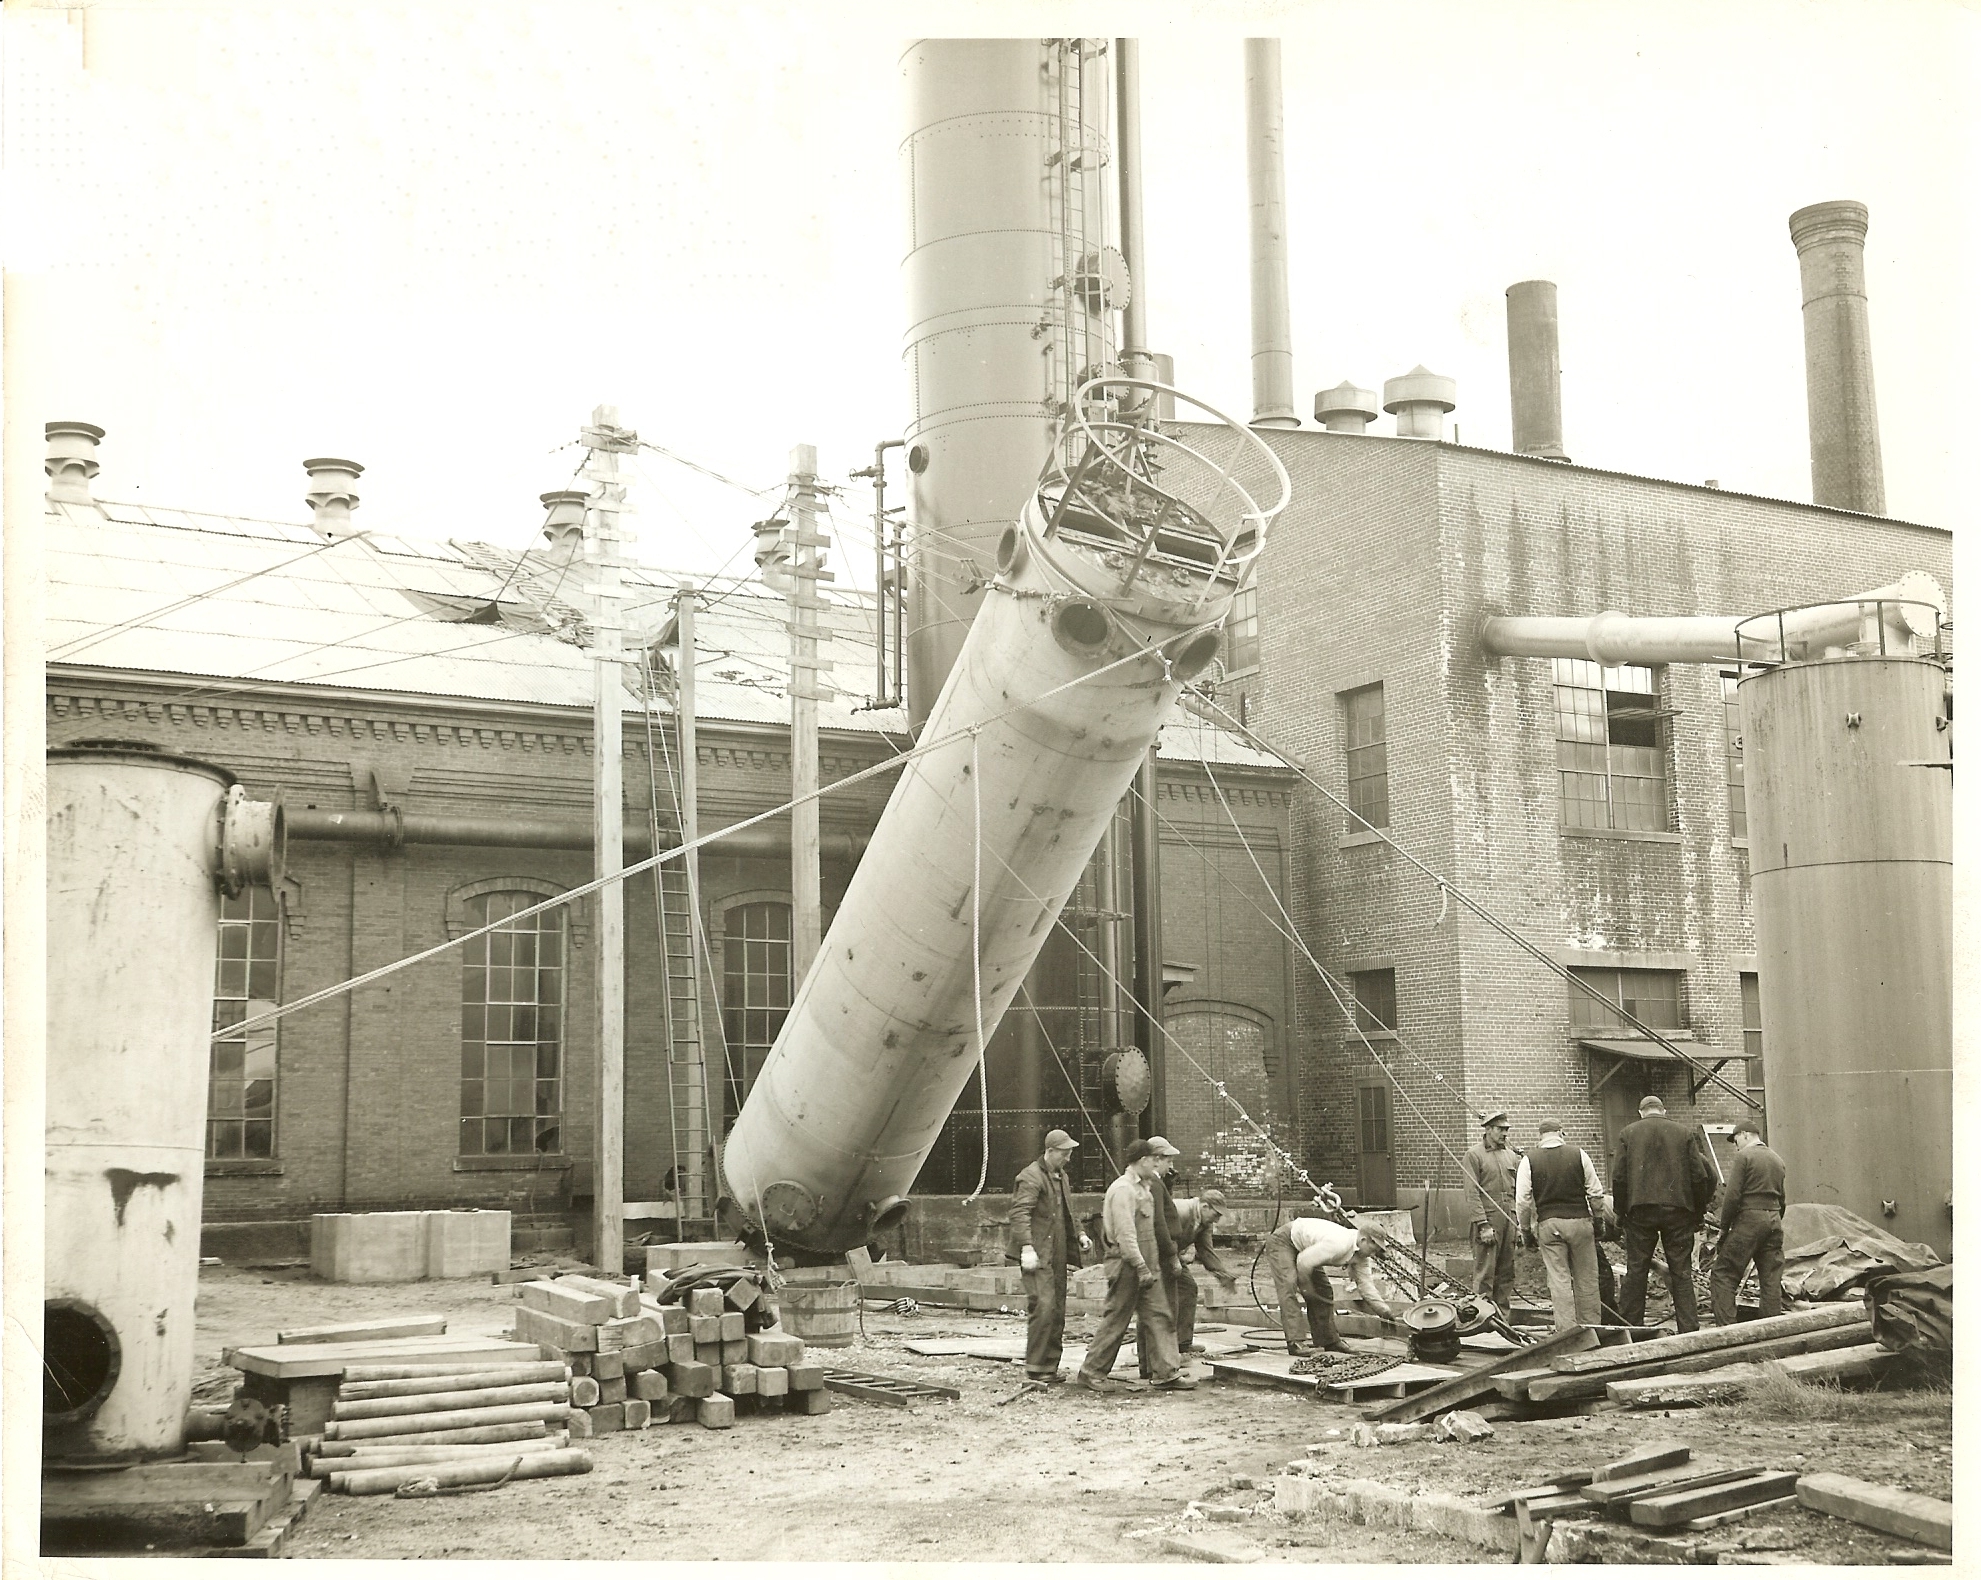 Louis P. Cote, Inc.'s riggers hoist a large tank into it's vertical position.